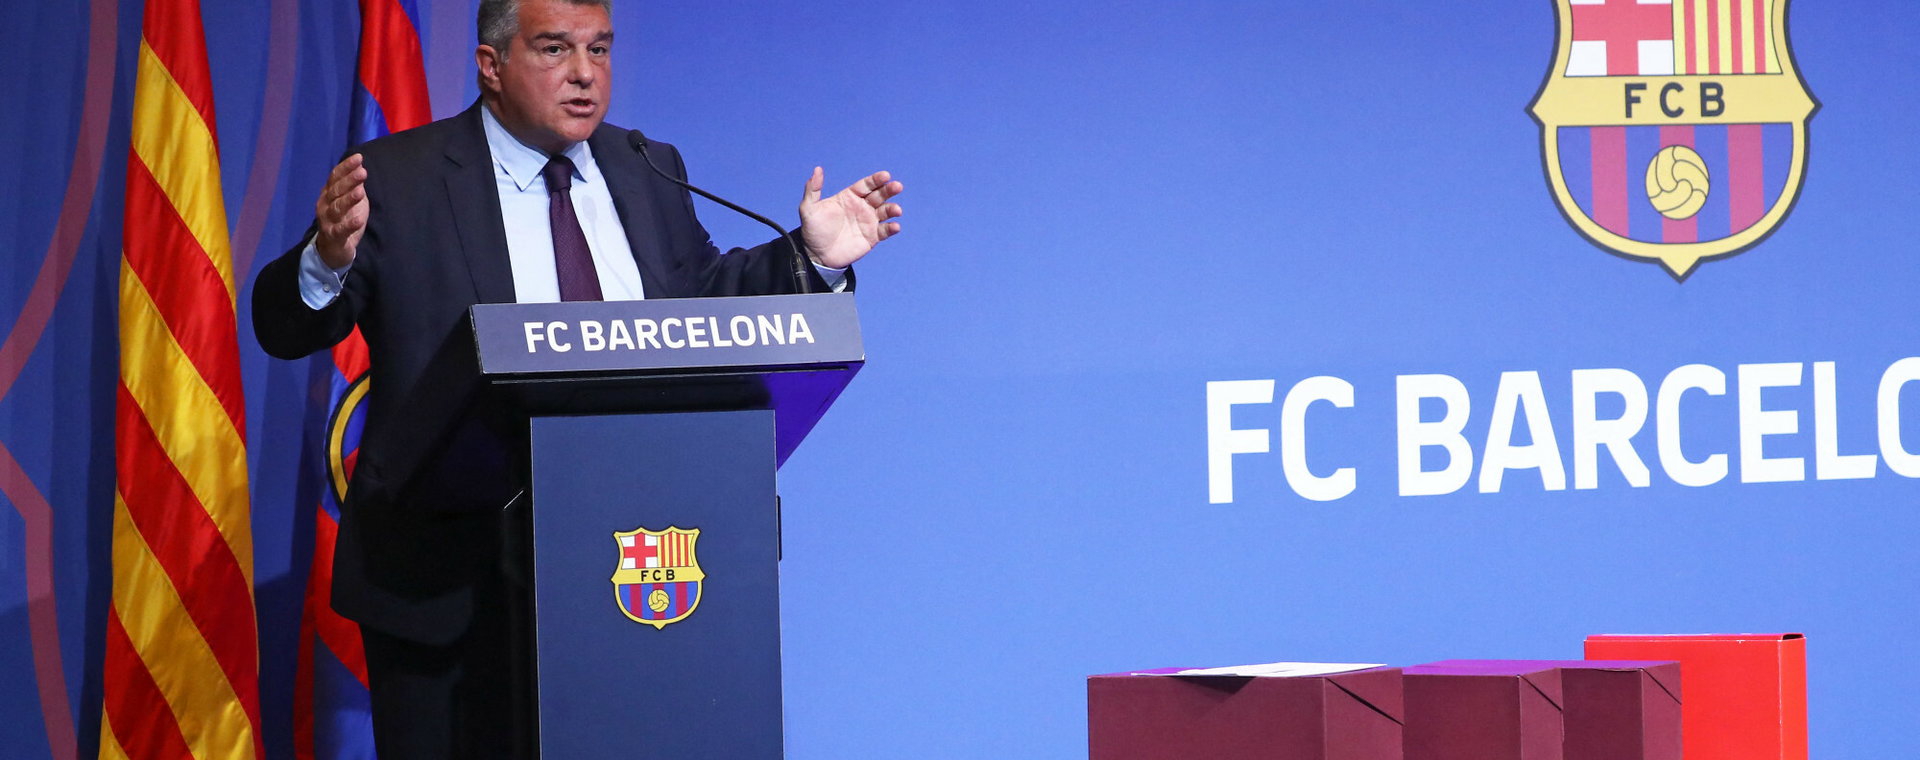 Prezydent FC Barcelony, Joan Laporta, przedstawiał stanowisko klubu w sprawie Negreiry podczas konferencji prasowej